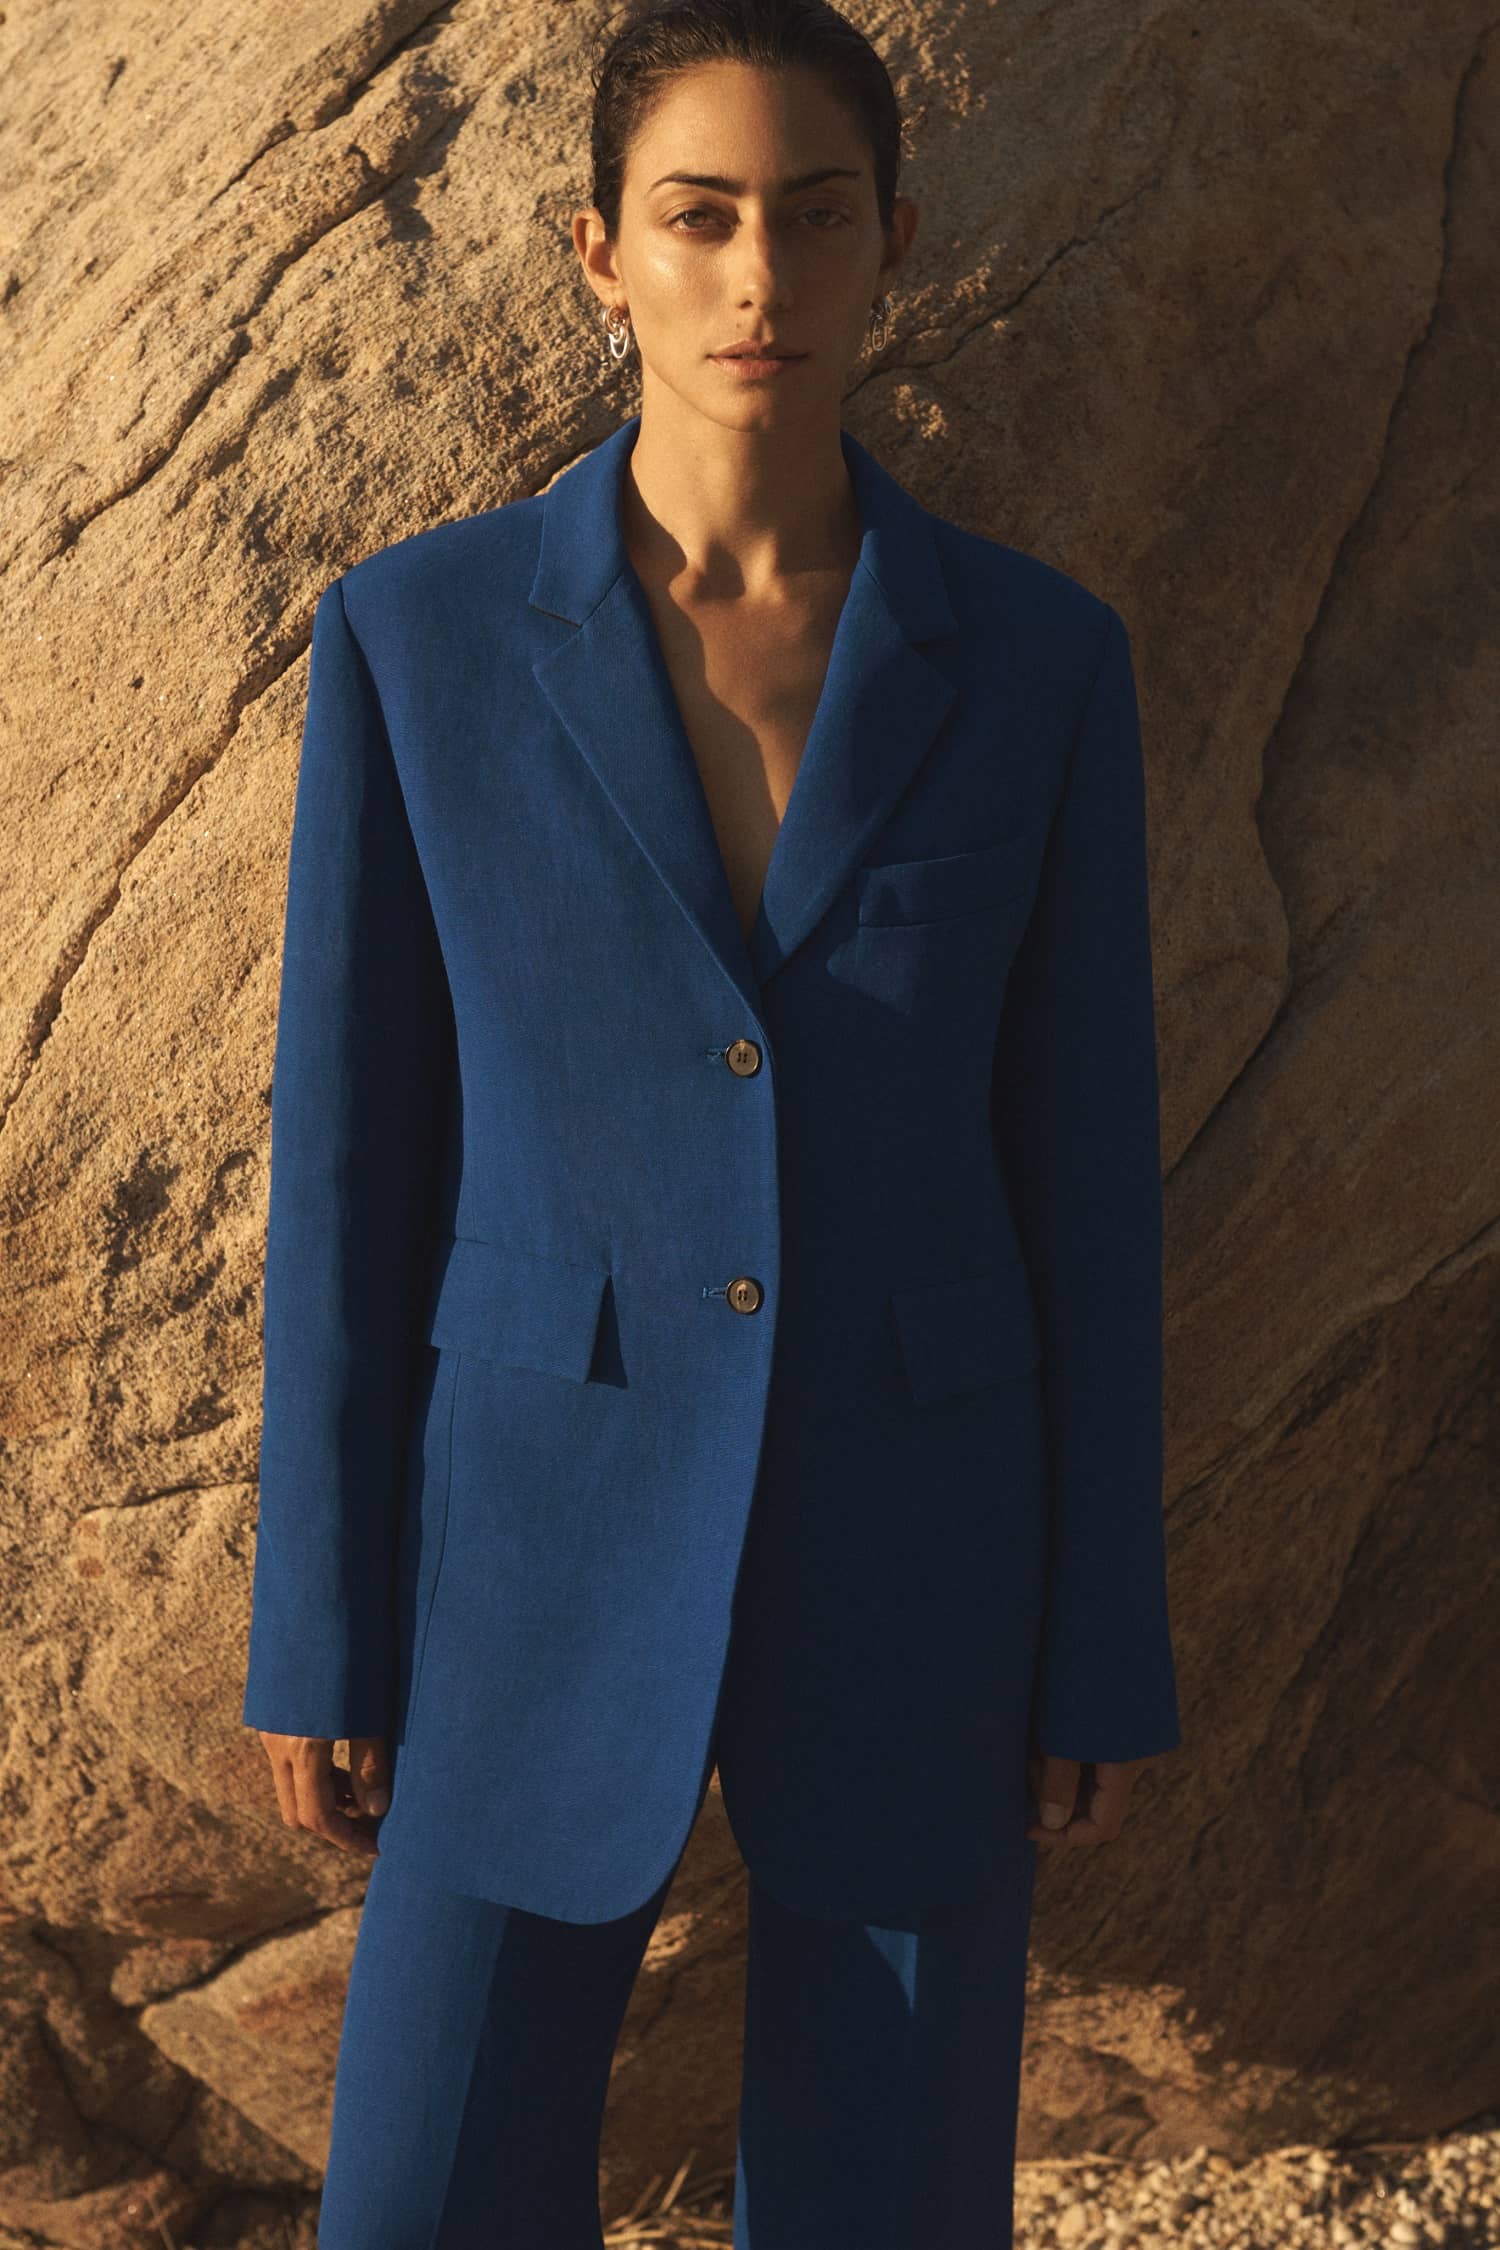 Clothing: CO Blue Suit Jacket / CO Blue Suit Pants / Model: Conie Vallese